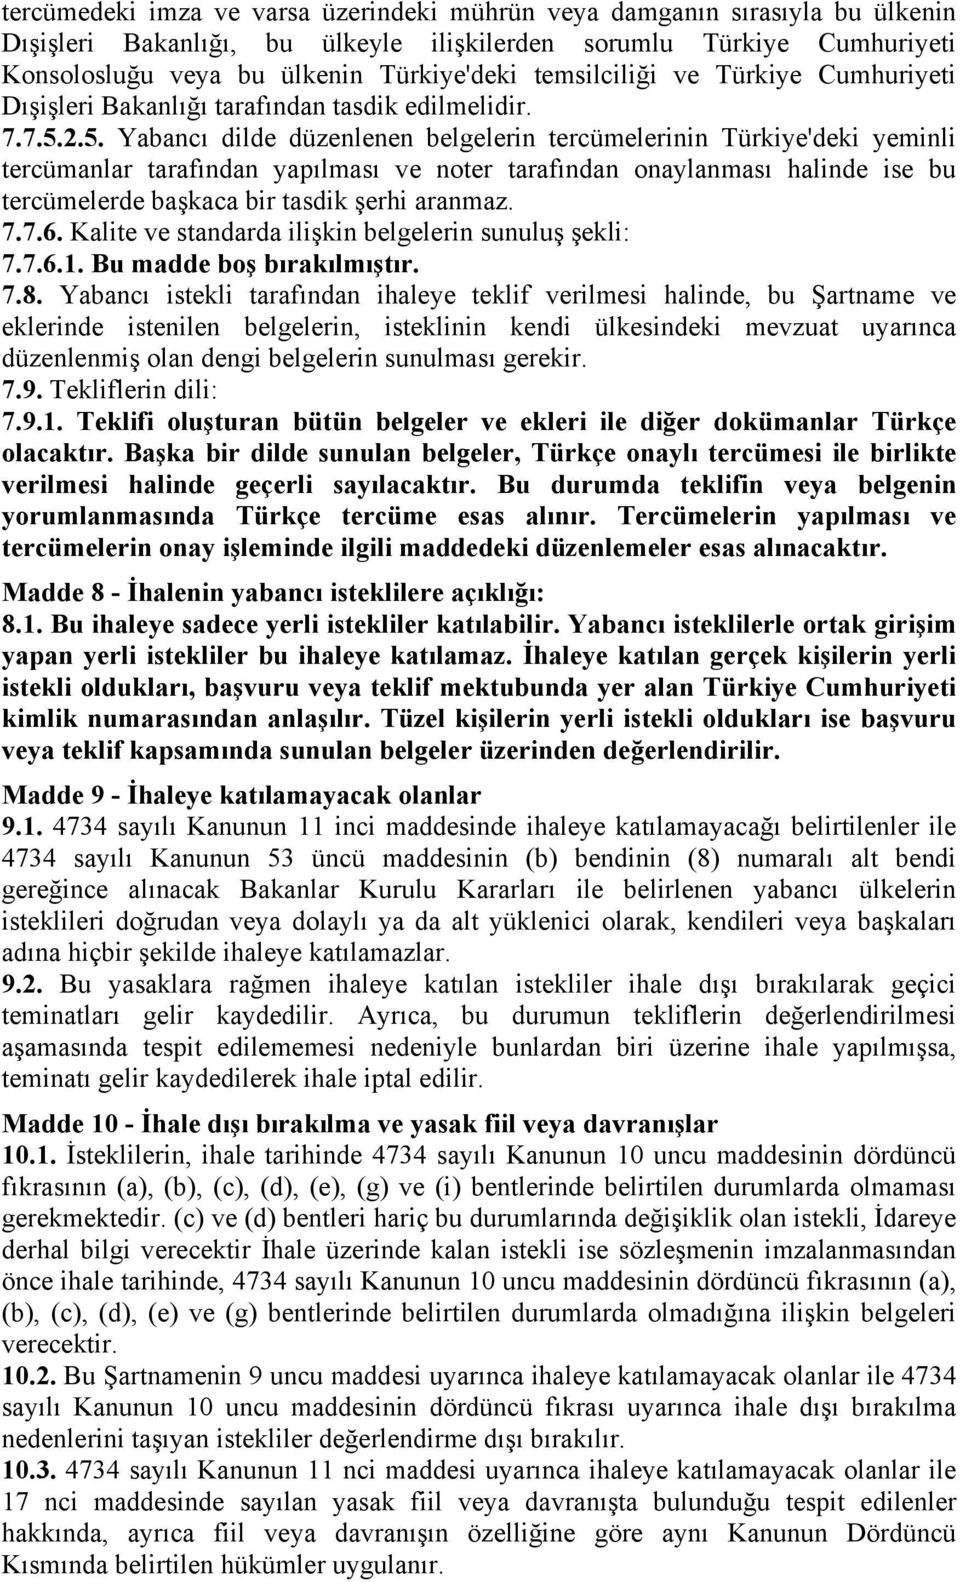 2.5. Yabancı dilde düzenlenen belgelerin tercümelerinin Türkiye'deki yeminli tercümanlar tarafından yapılması ve noter tarafından onaylanması halinde ise bu tercümelerde başkaca bir tasdik şerhi